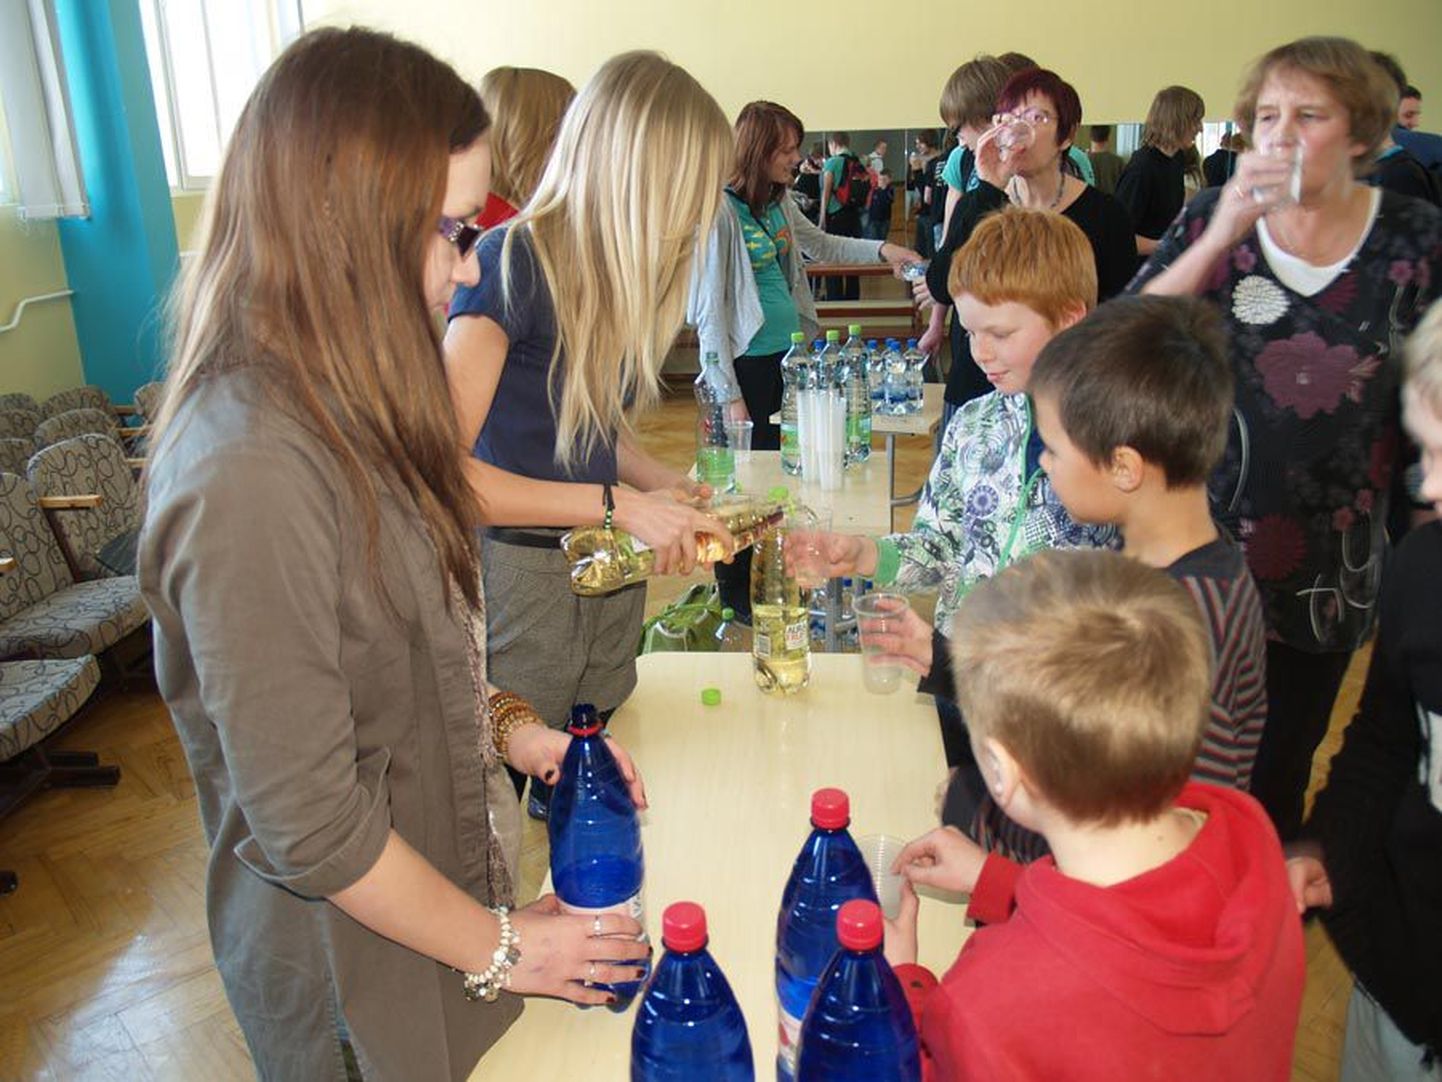 Jakobsoni gümnaasiumi õpilased degusteerisid enne vaheajale minekut erinevate firmade pudelivett ning valisid maitsvaima.